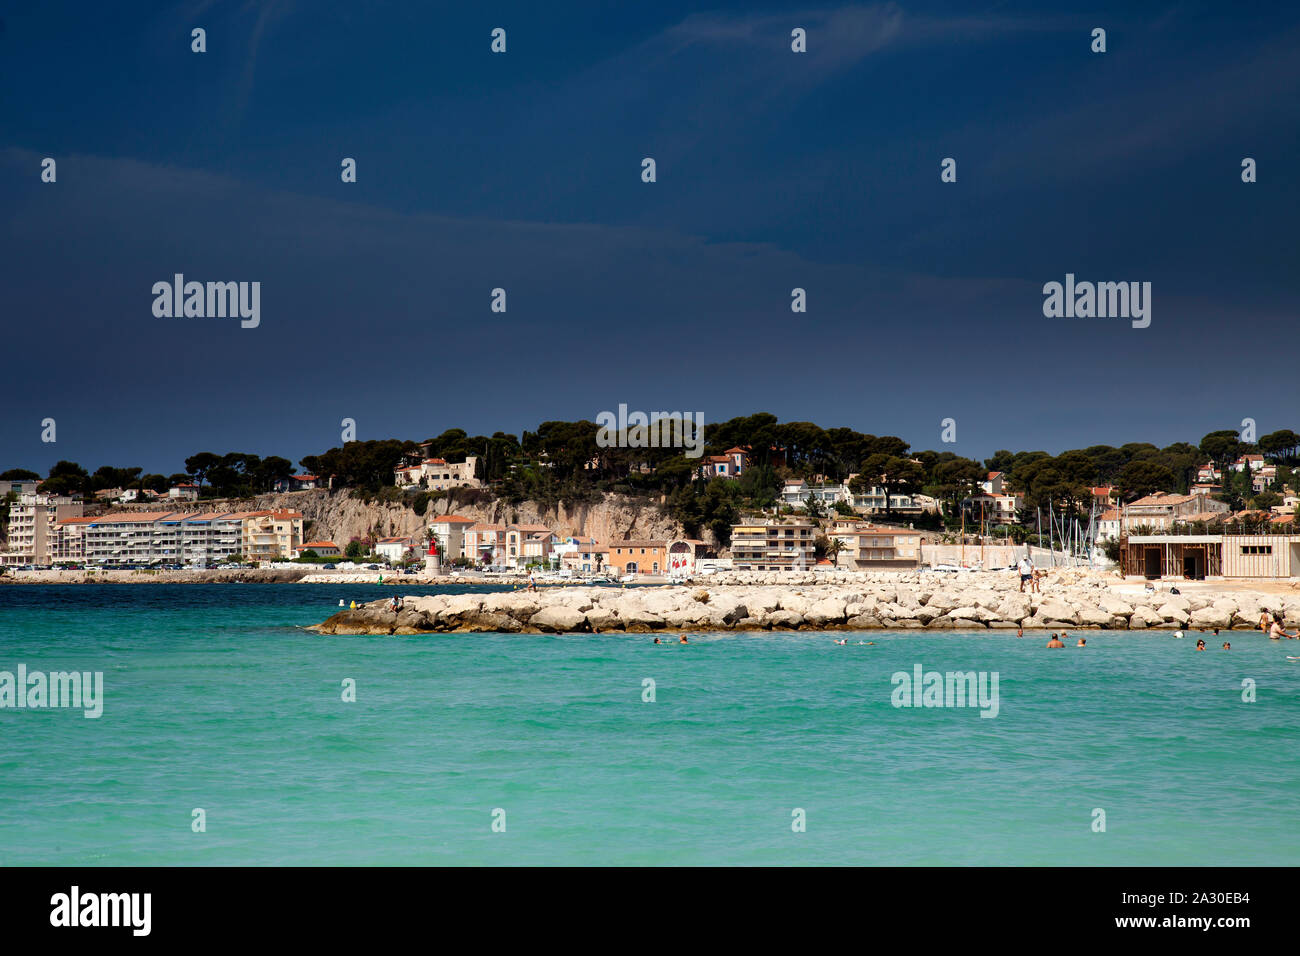 Küstenabschnitt mit Hotelanlagen an der  Bale de Bandol, Bucht von Bandol, Alpes-Maritimes, Cote d'Azur, Südfrankreich, Frankreich, Europa| Coastline Stock Photo